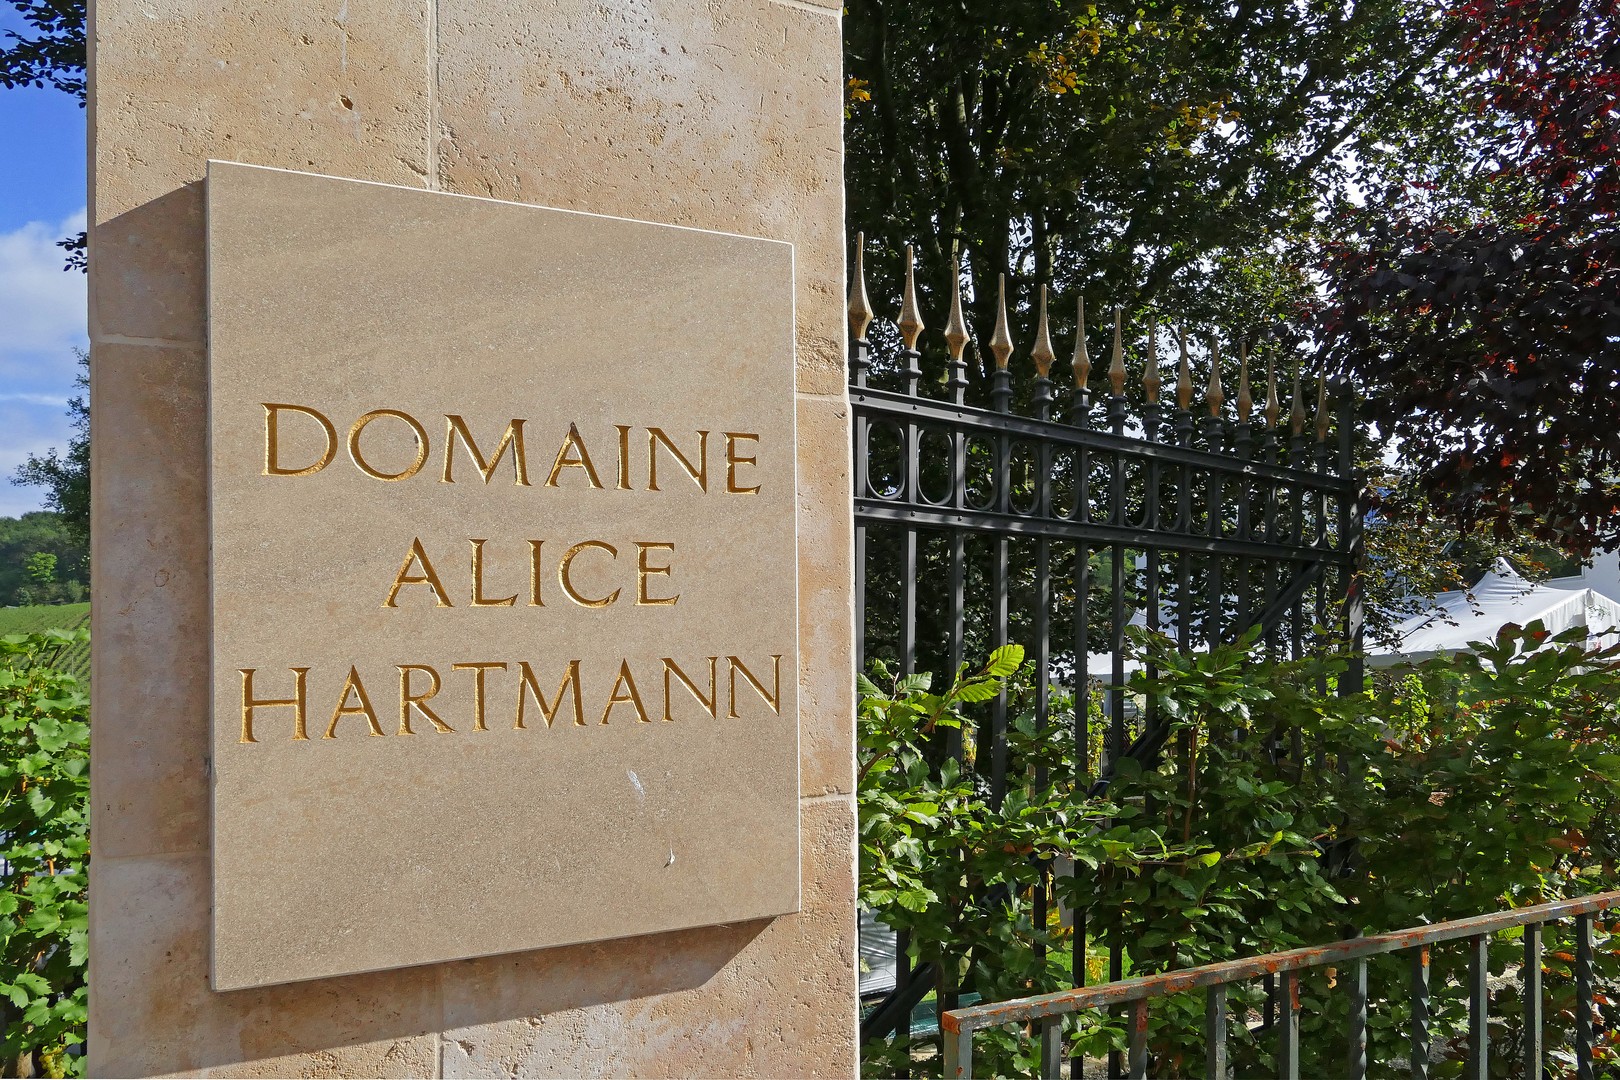 Domaine Alice Hartmann